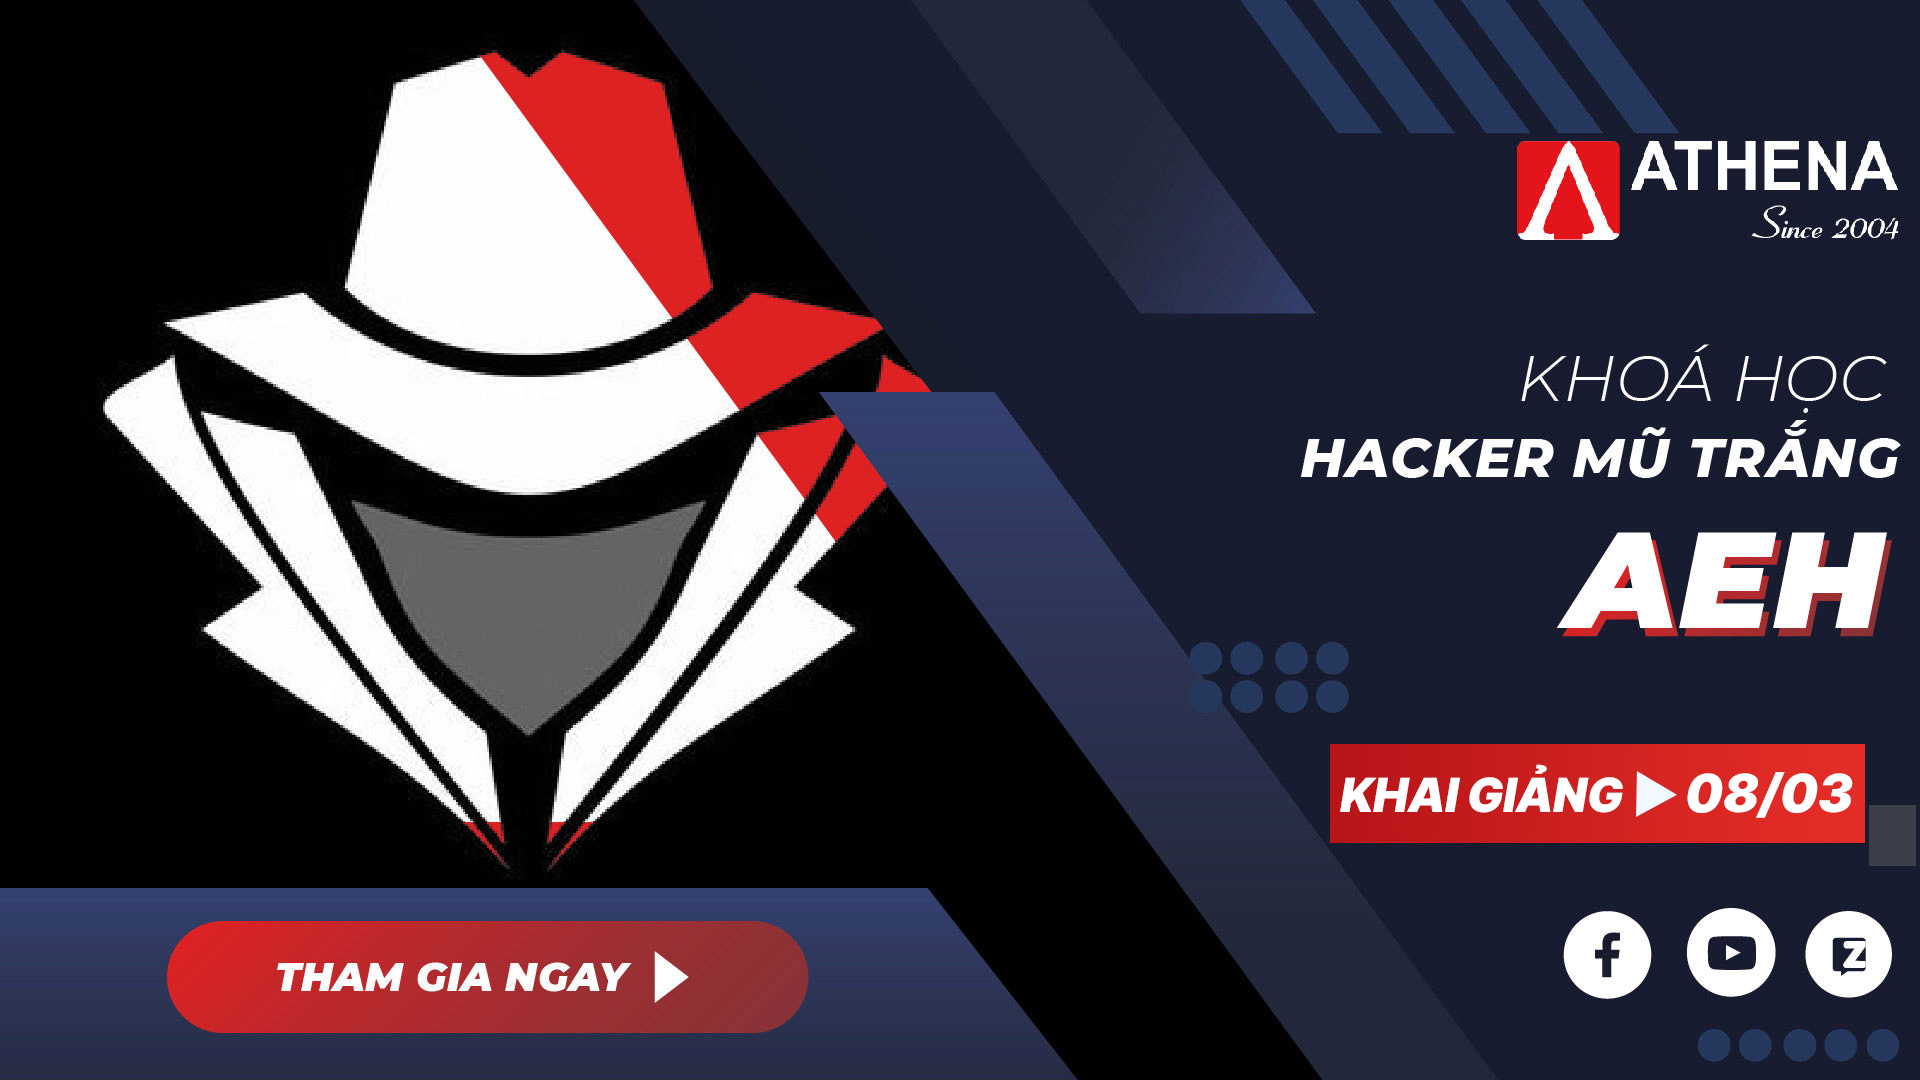  Chương trình đào tạo Hacker Mũ Trắng tại Trung tâm Athena Khoa-hoc-hacker-mu-trang-aeh-2